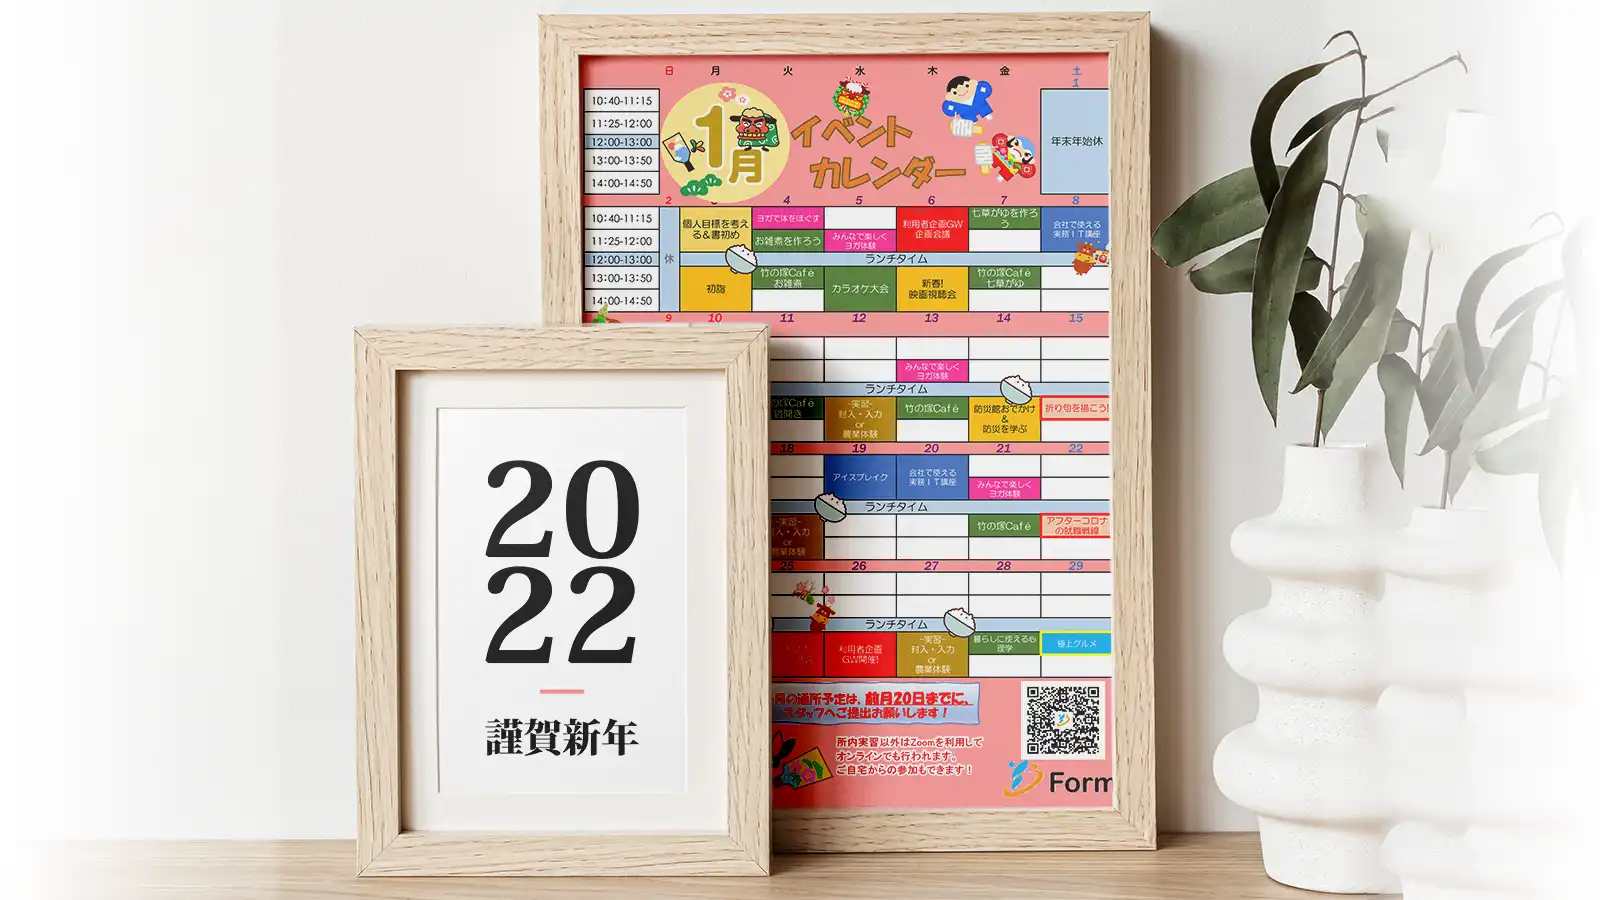 フォーム竹ノ塚2022年1月イベントカレンダーキャッチコピー画像